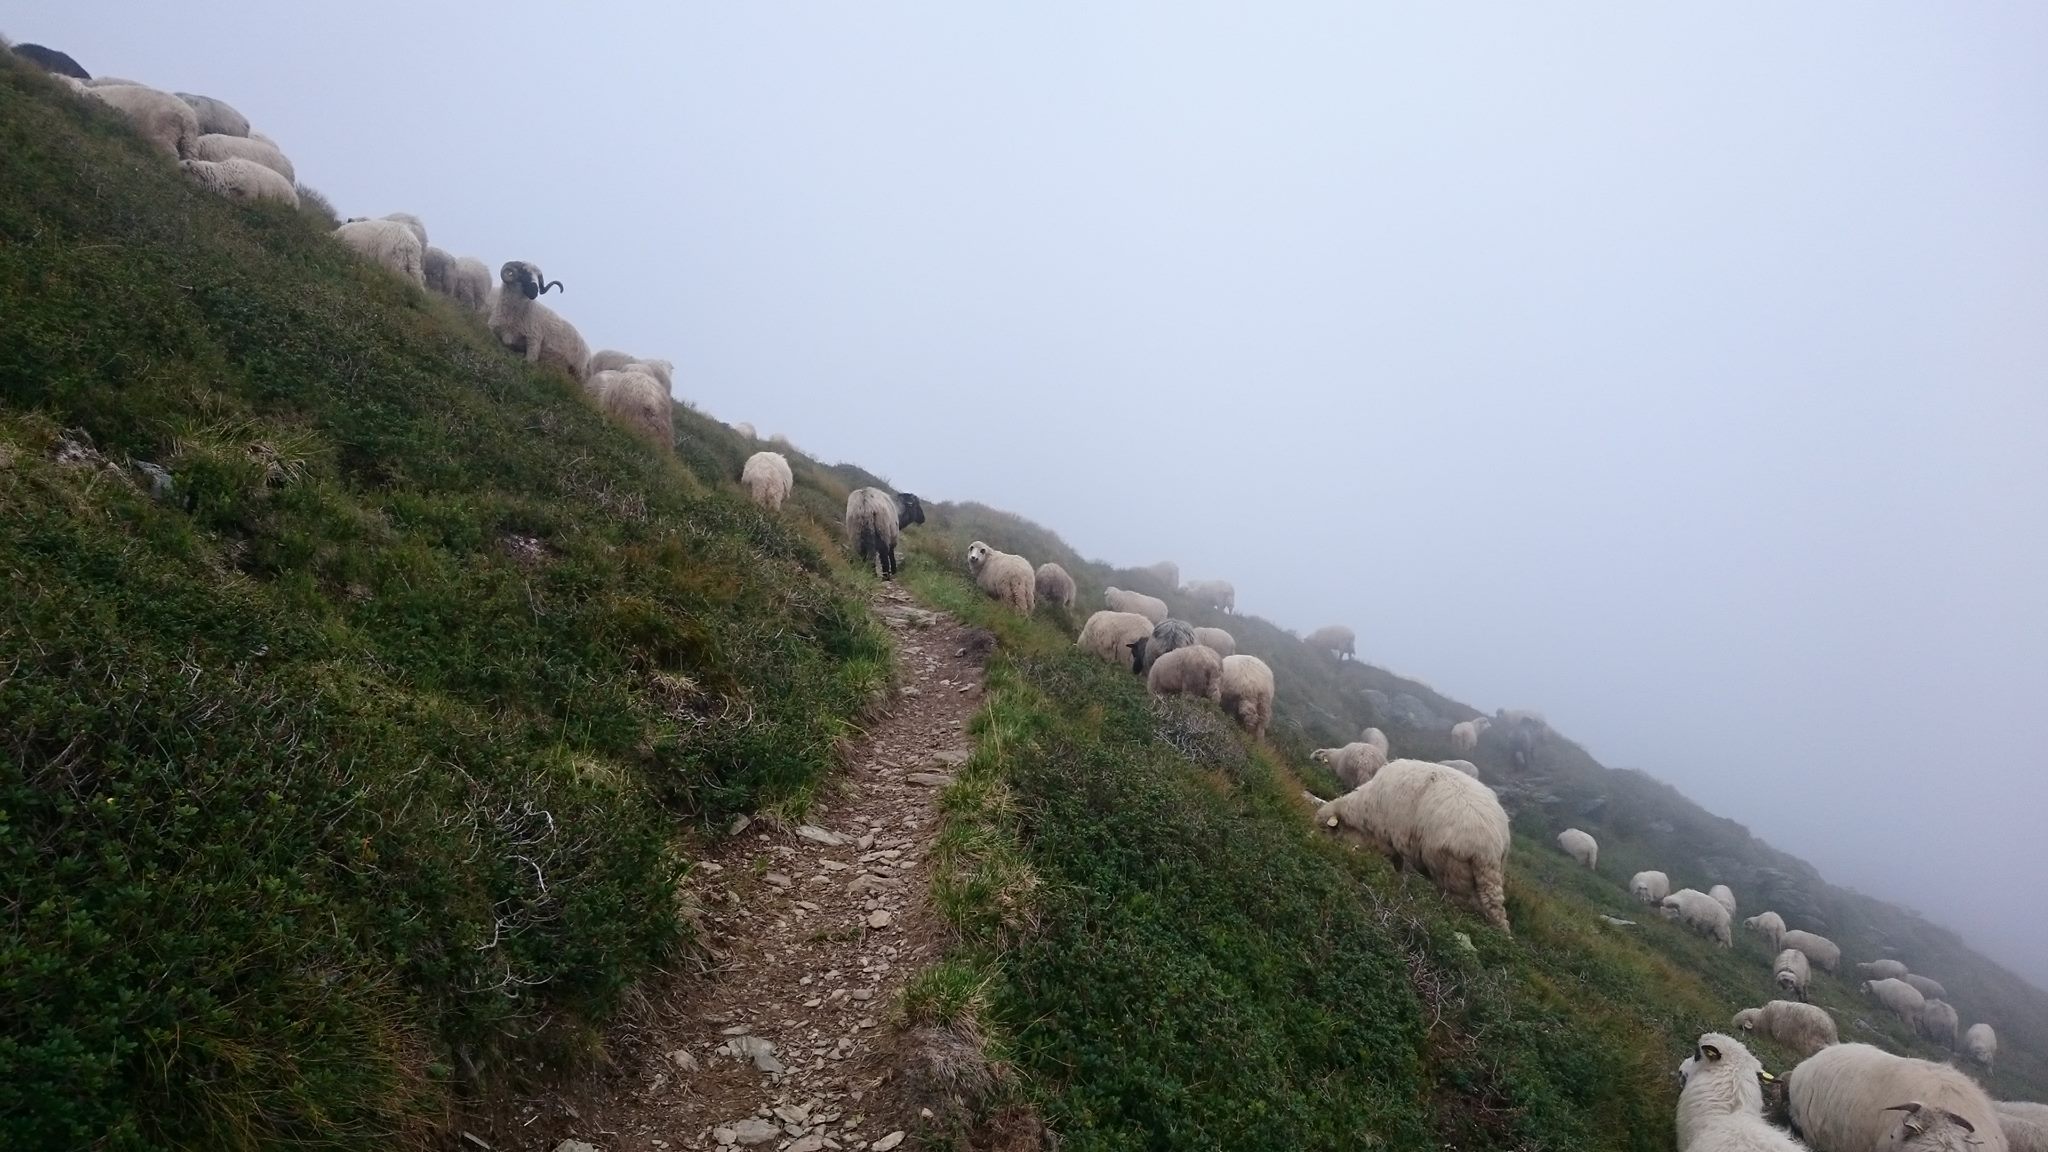 Les troupeaux de moutons sont un peu de partout. Les chiens de bergers sont très agressifs et il ne faut pas hésiter à les tenir à distance avec des pierres